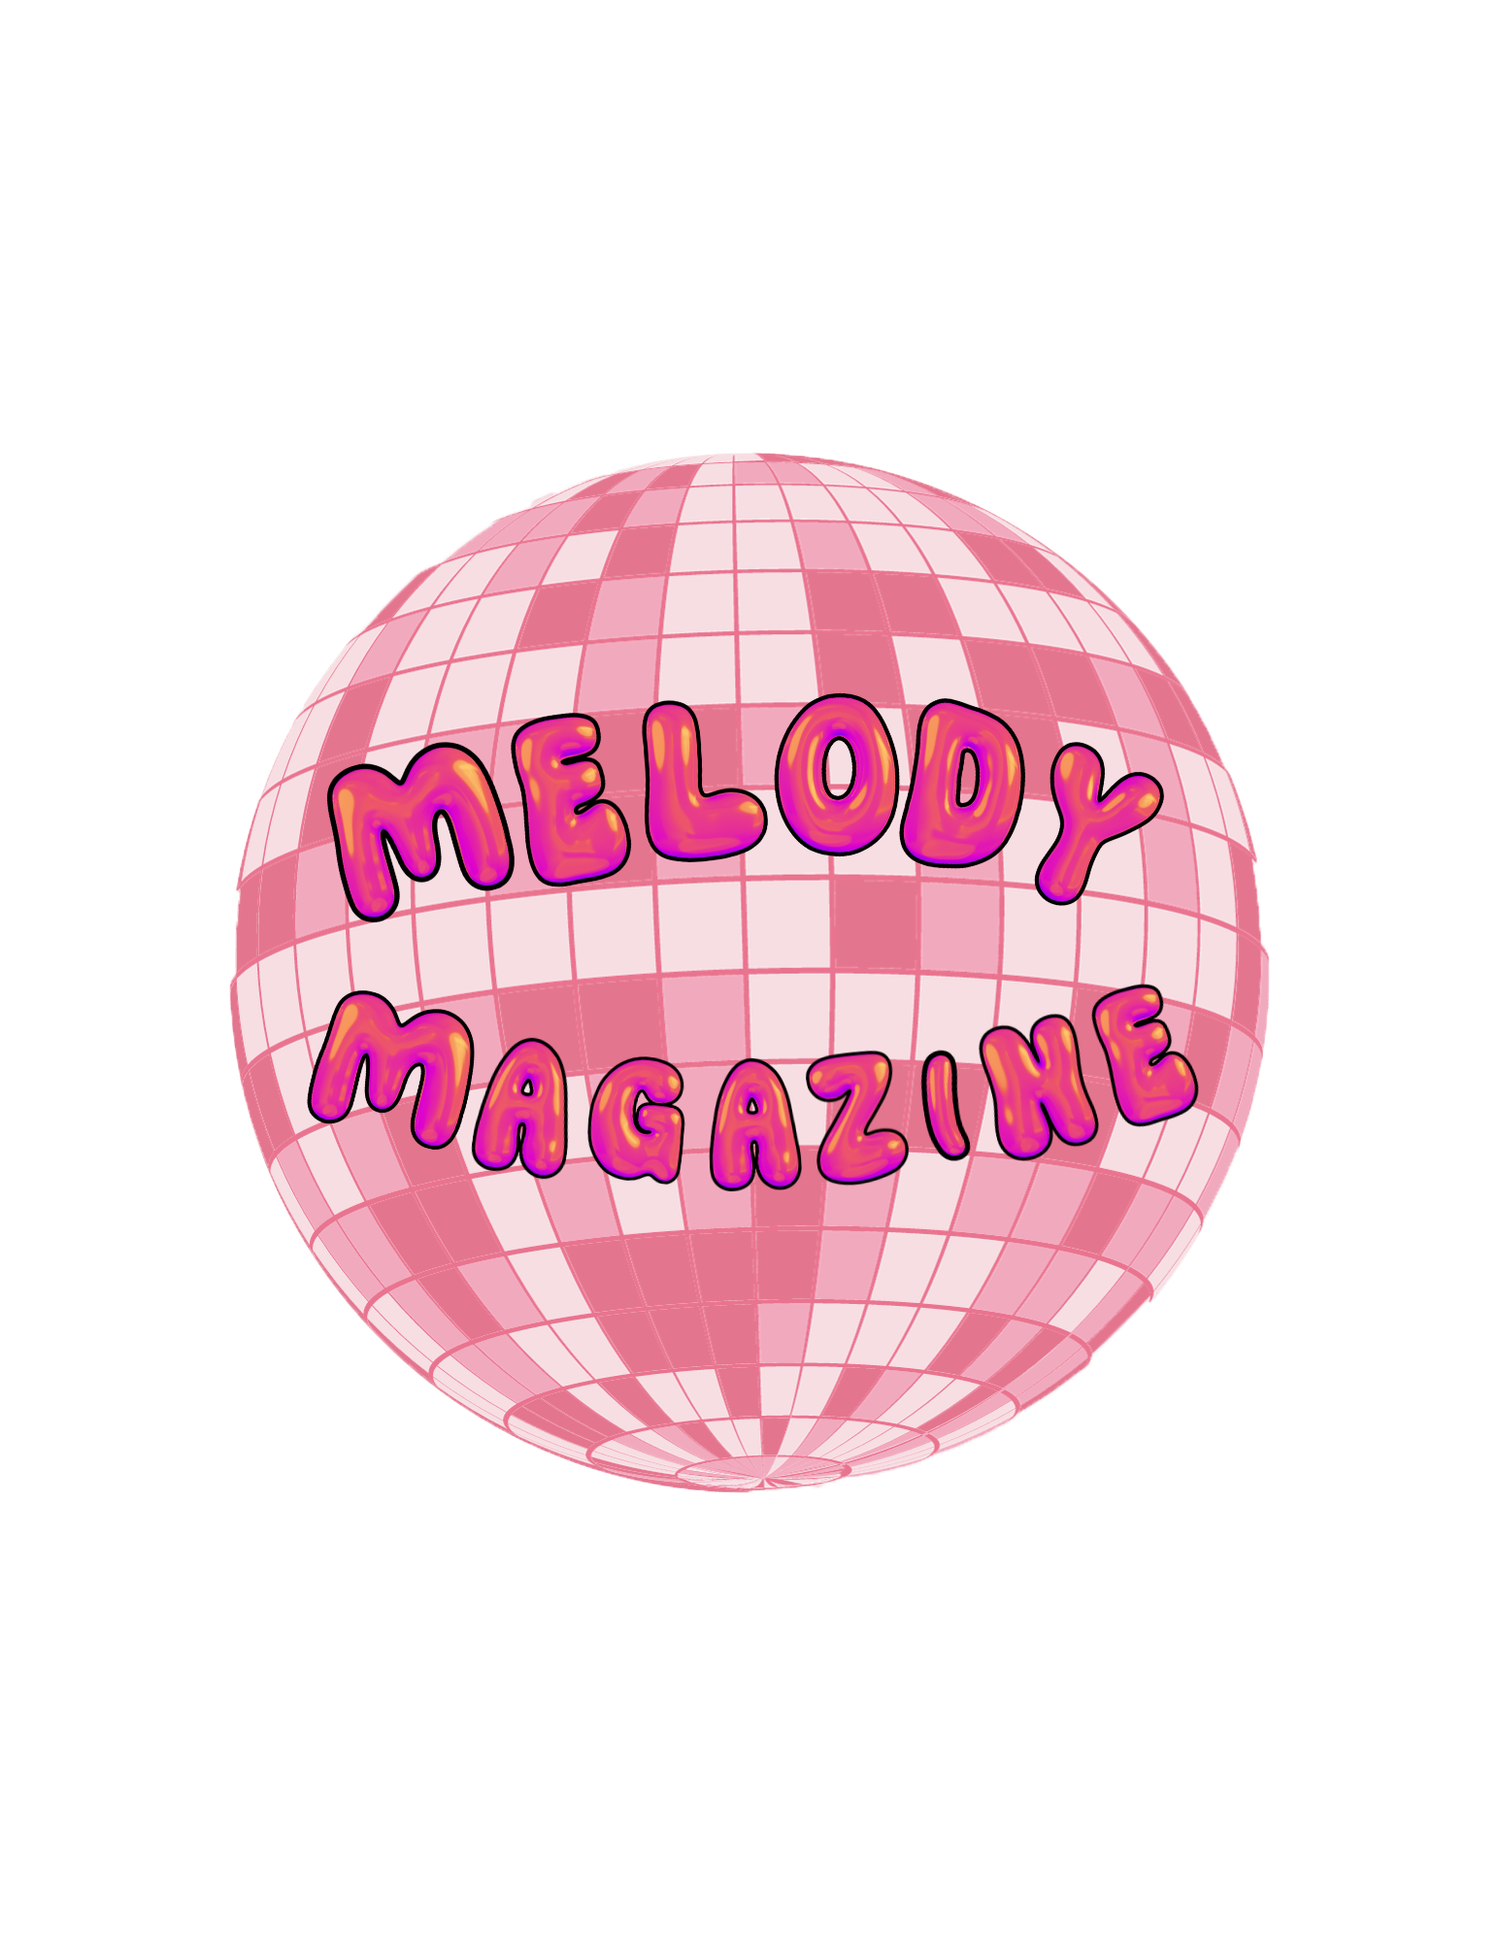 Melody Magazine